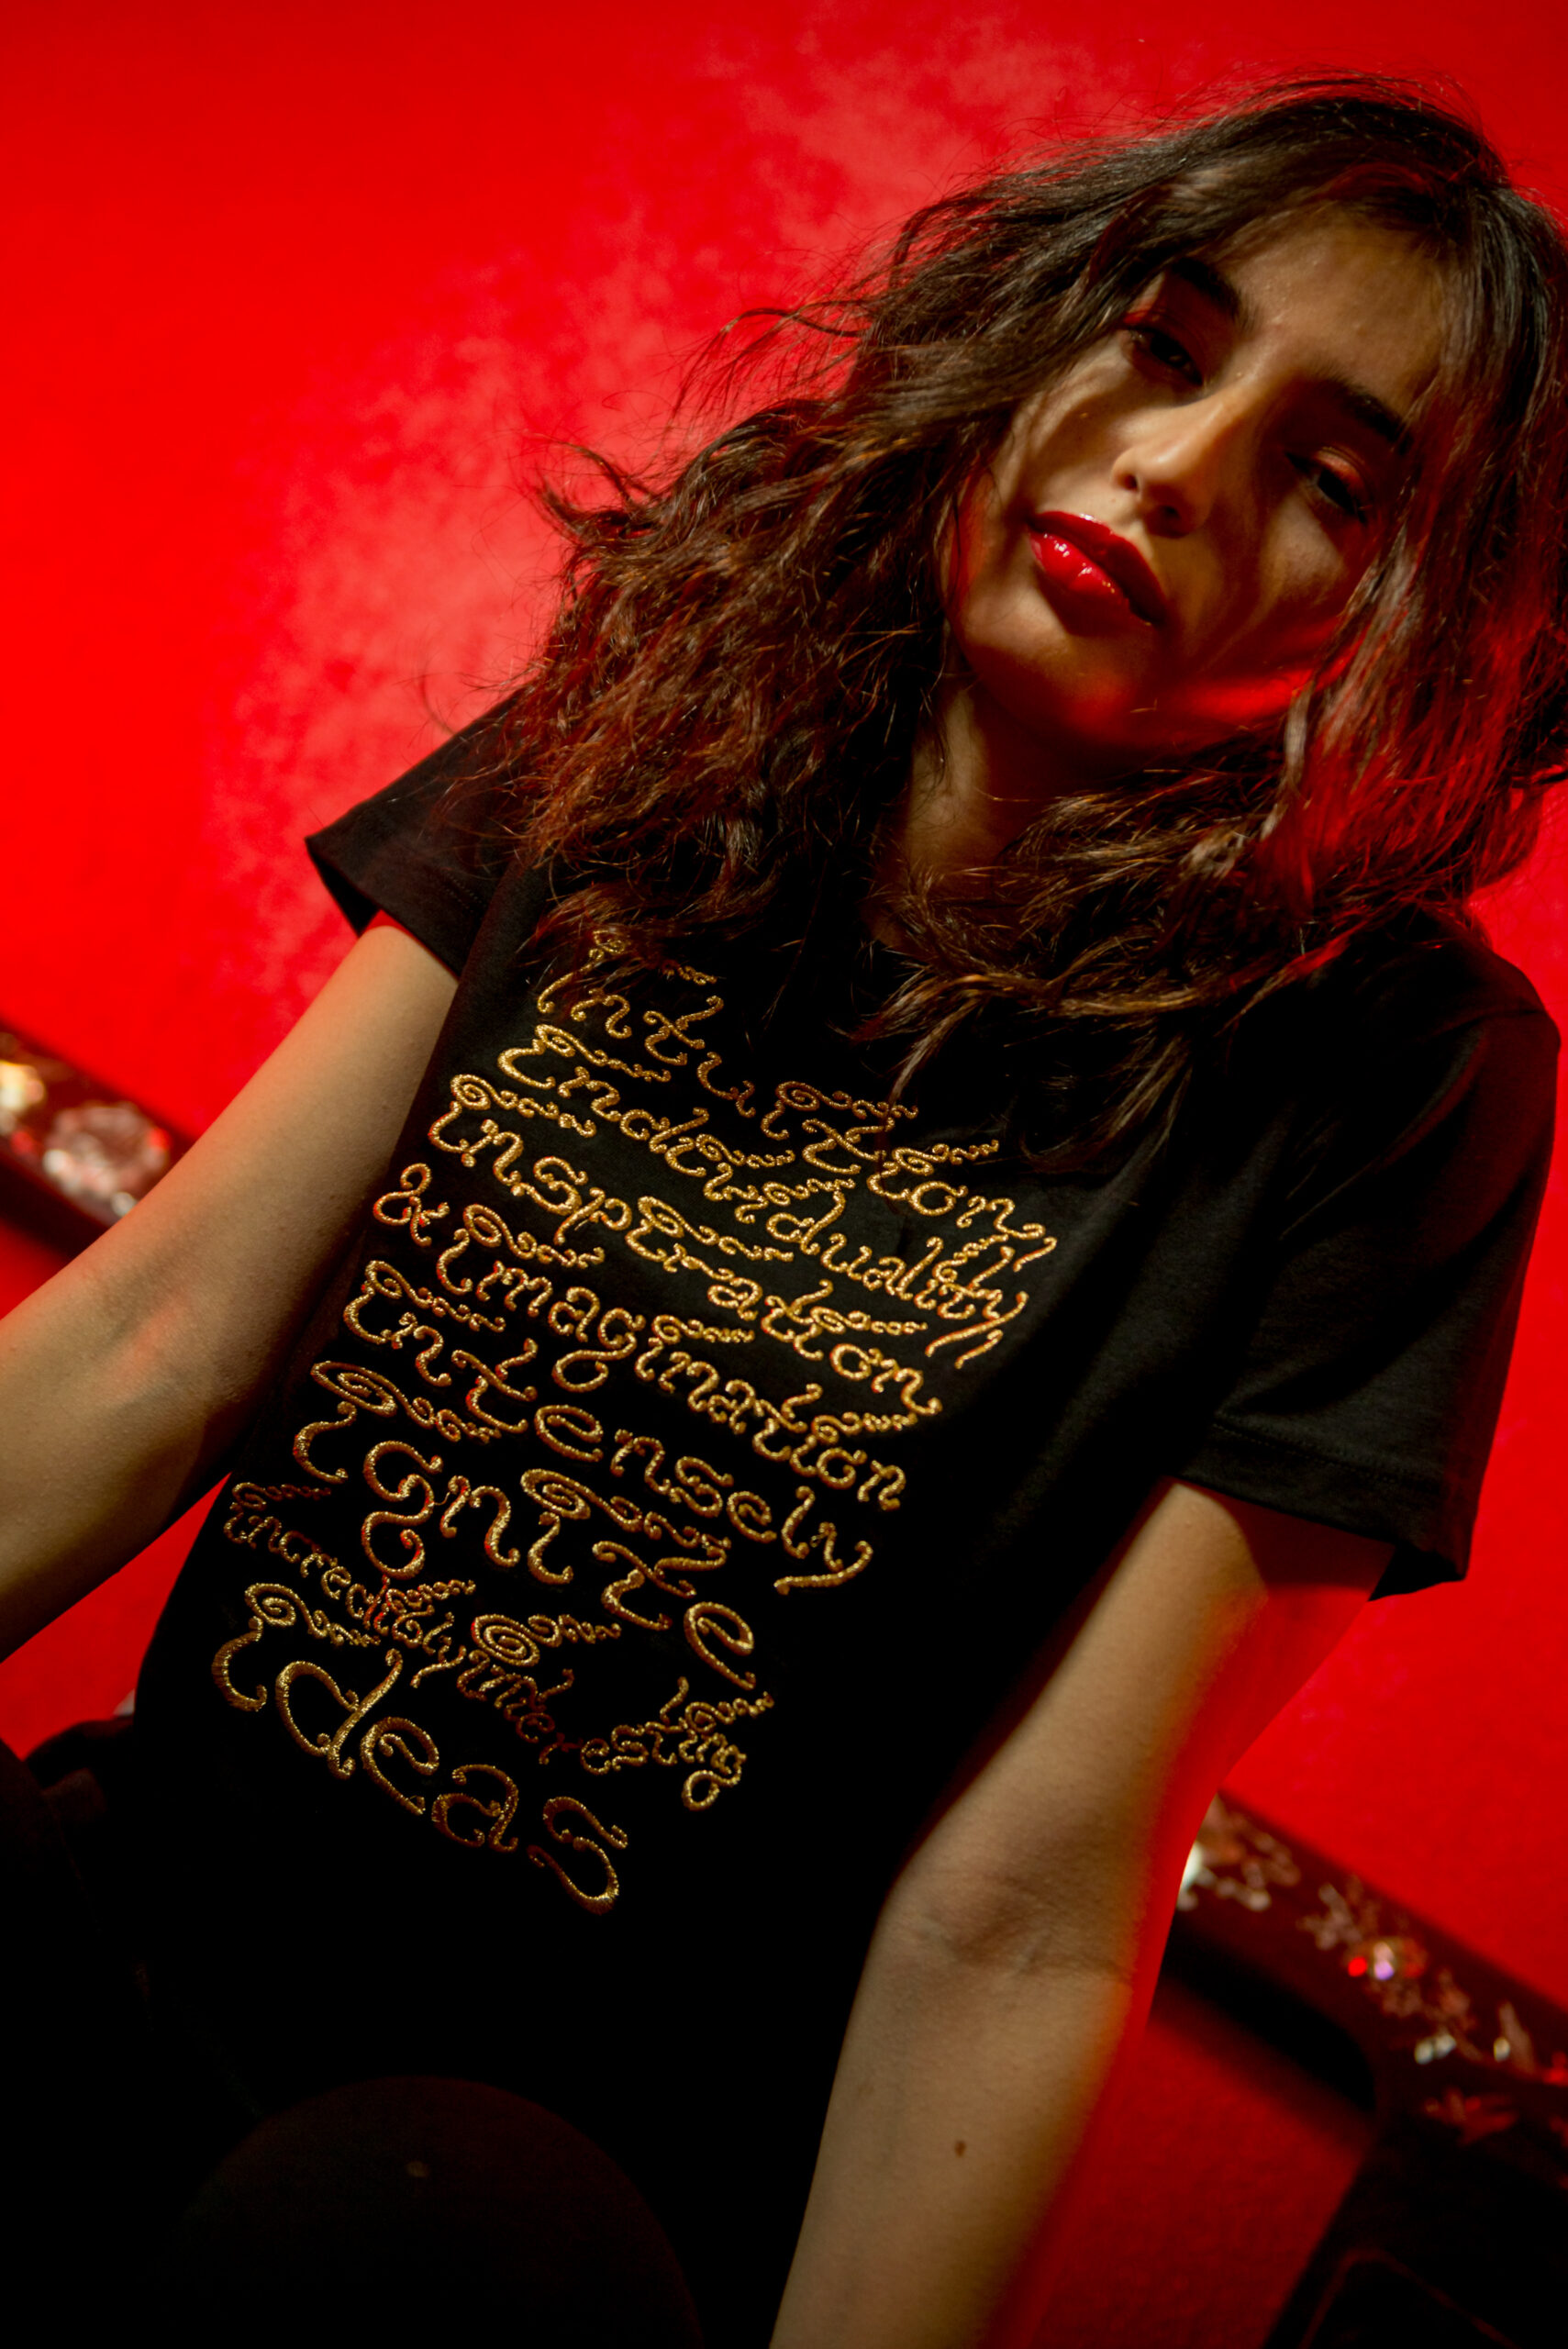 Fotografie eseguite presso lo spazio rosso per la collezione di t shirt di Franca Borgia con la modella Matilde